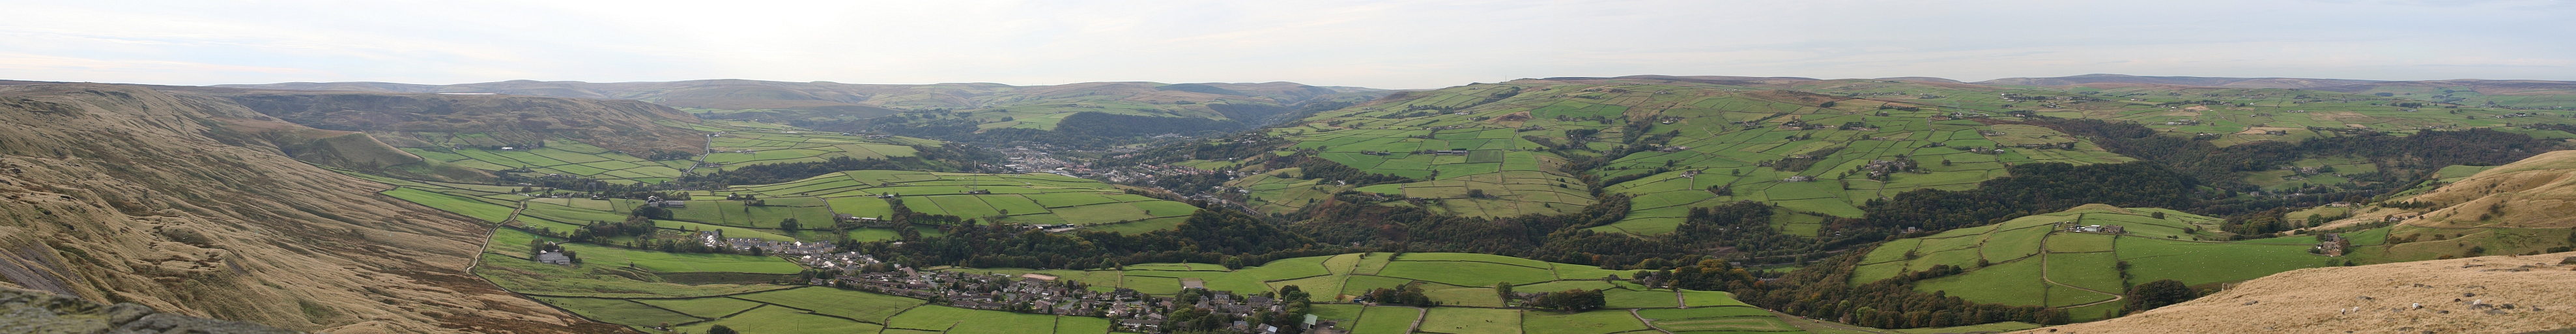 Panorama doliny rzeki Calder z miastem Todmorden, West Yorkshire z wiey widokowej Stoodley Pike